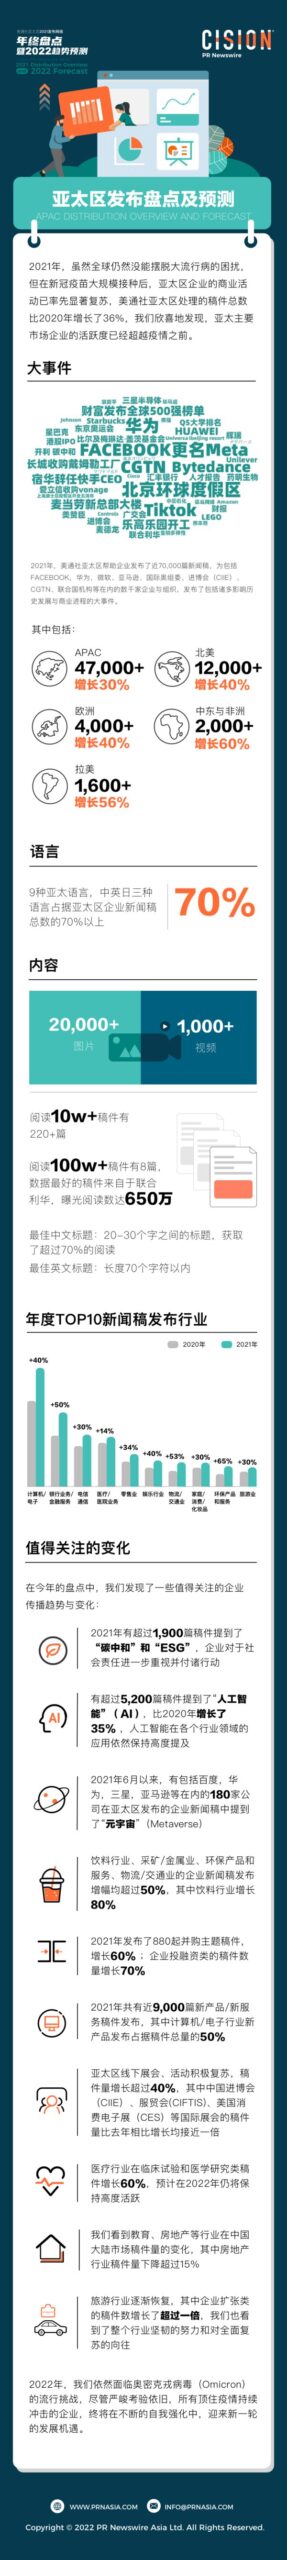 2021新闻稿网 - Xinwengao.com亚太区发布网络盘点-亚太区发布盘点及预测